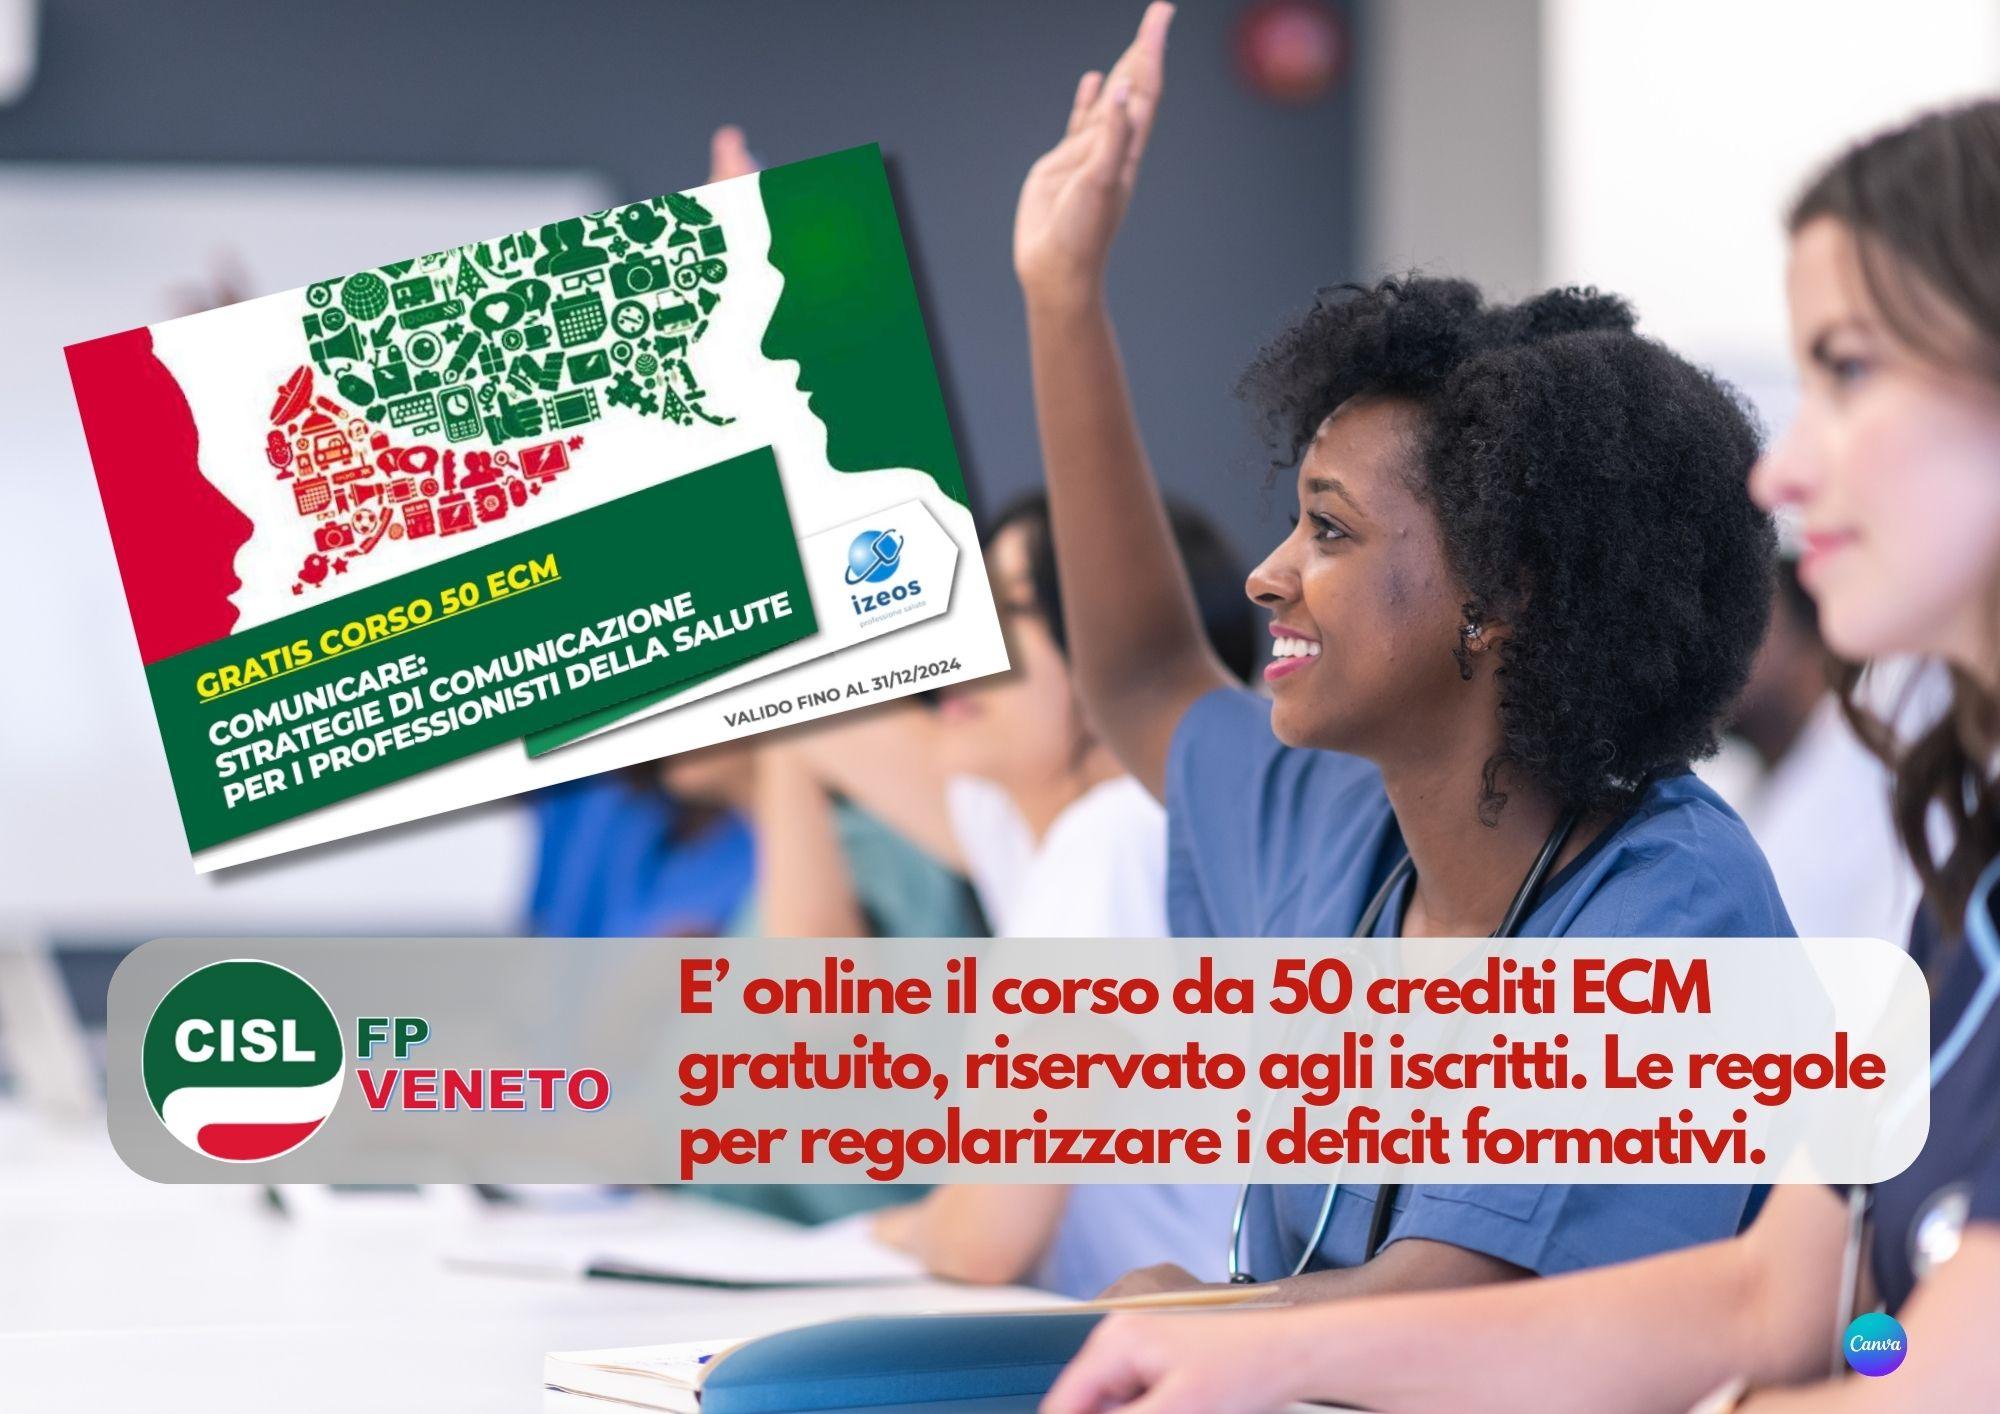 CISL FP Veneto. Percorso formativo ECM da 50 crediti gratis per gli iscritti. Regole per i crediti